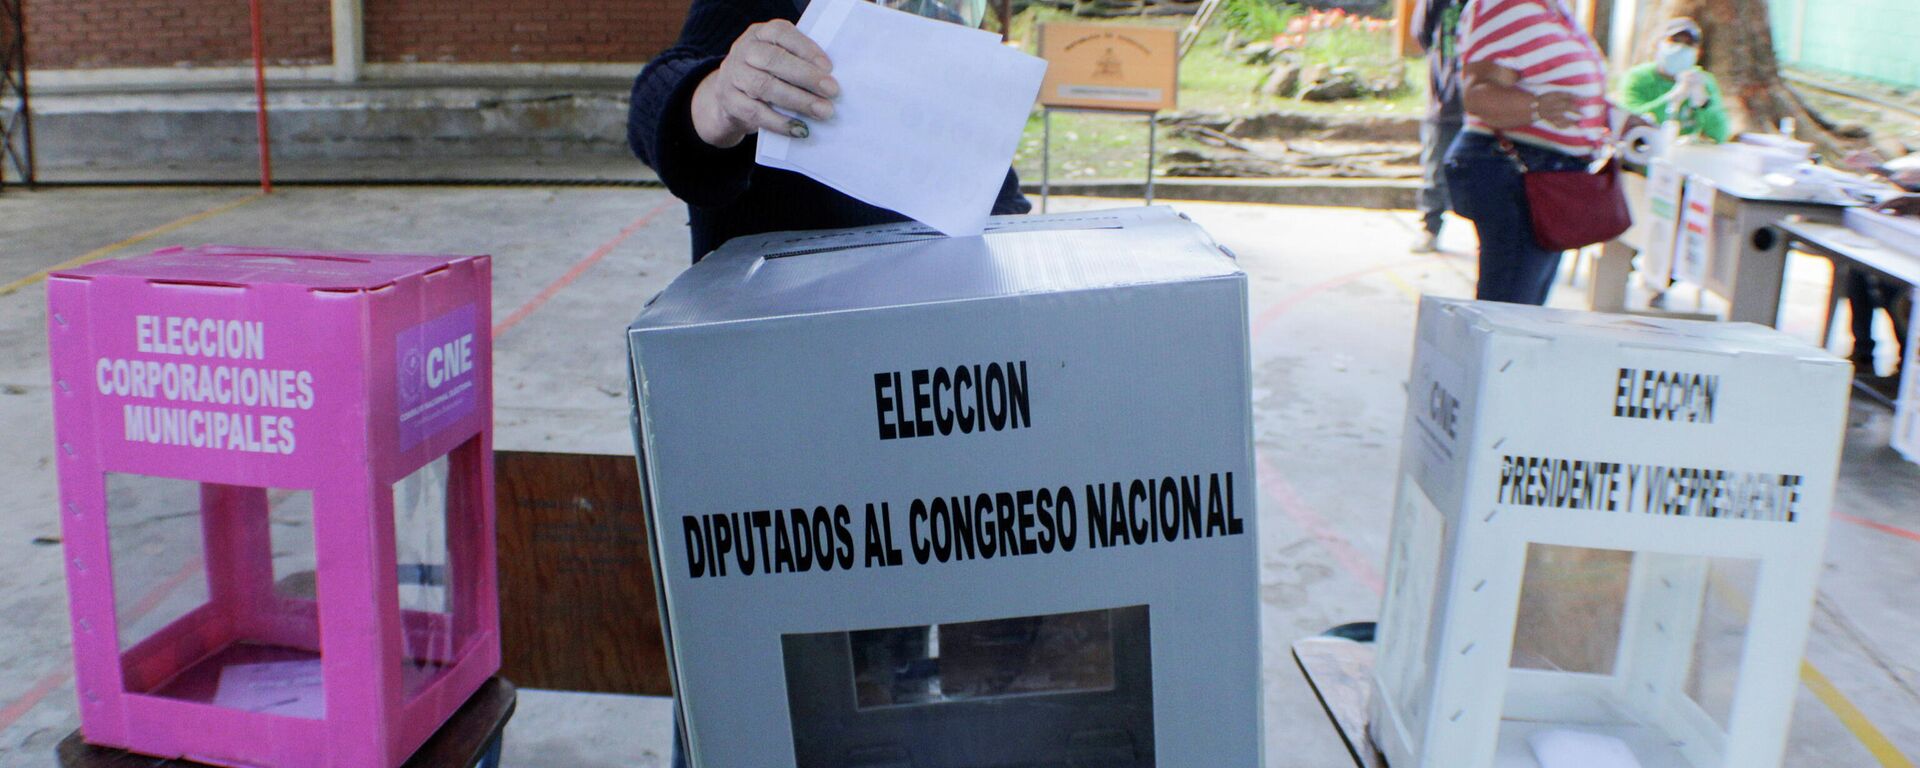 Elecciones primarias en Honduras - Sputnik Mundo, 1920, 15.03.2021